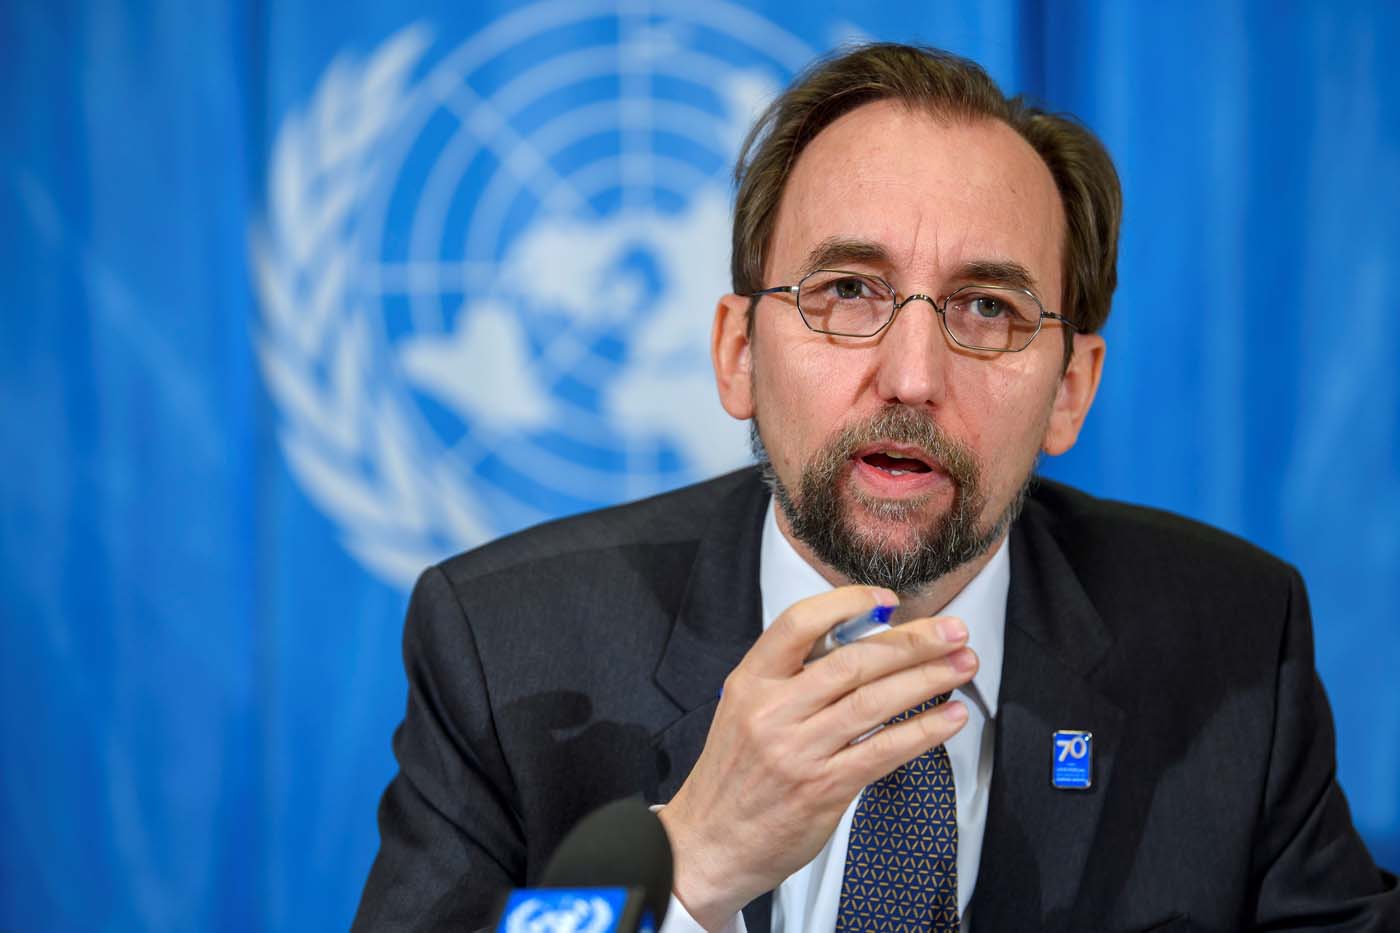 Alto comisionado de la ONU deplora golpiza contra Gregory Sanabria